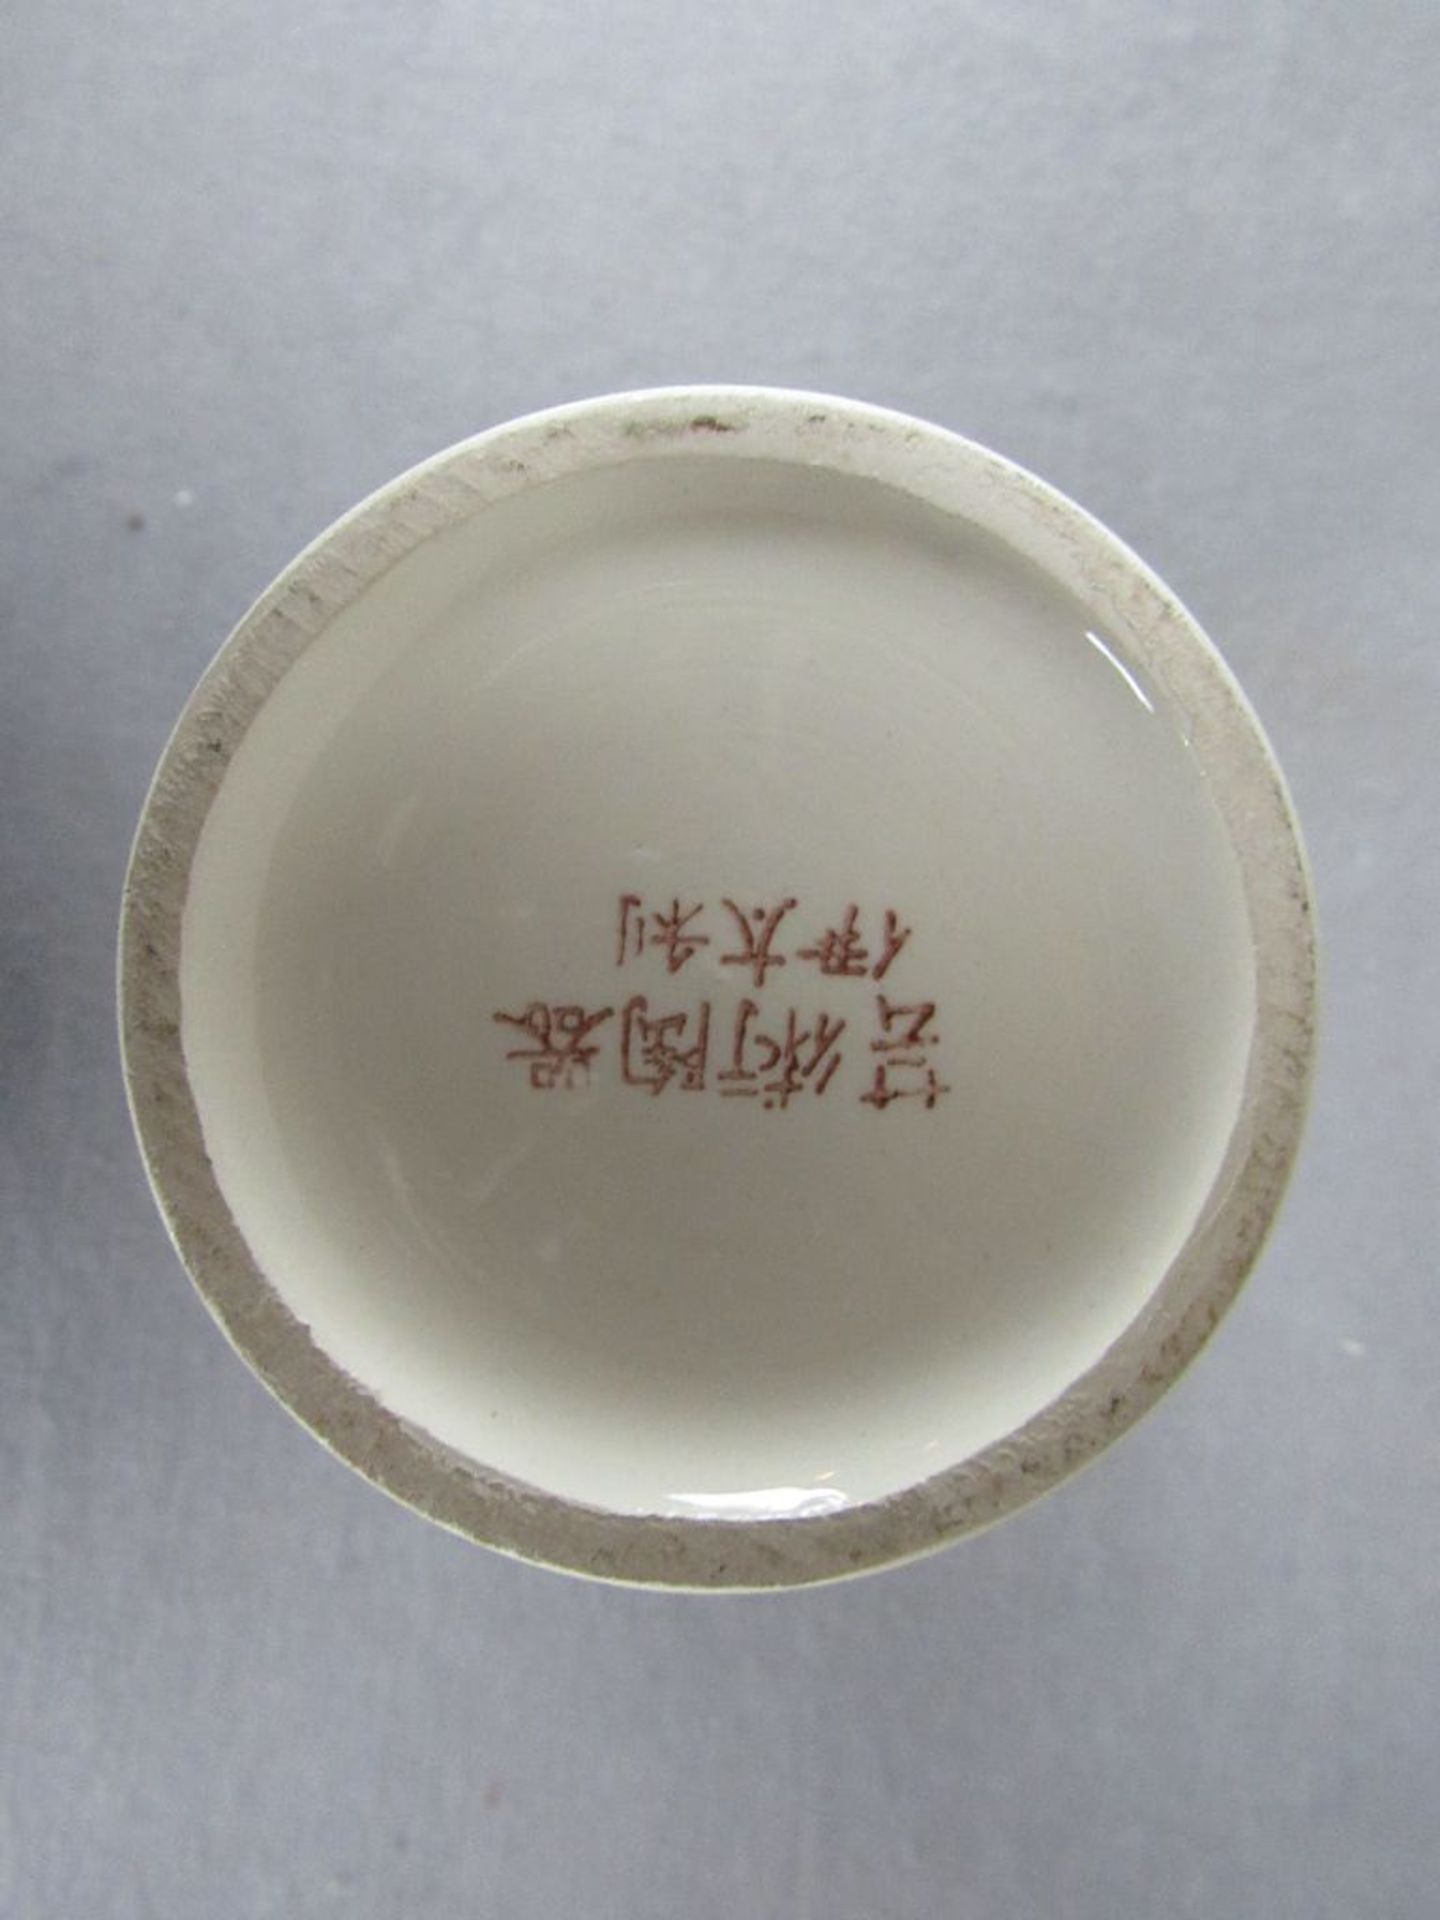 Vase asiatisch Keramik 26cm hoch gemarkt - Bild 4 aus 4